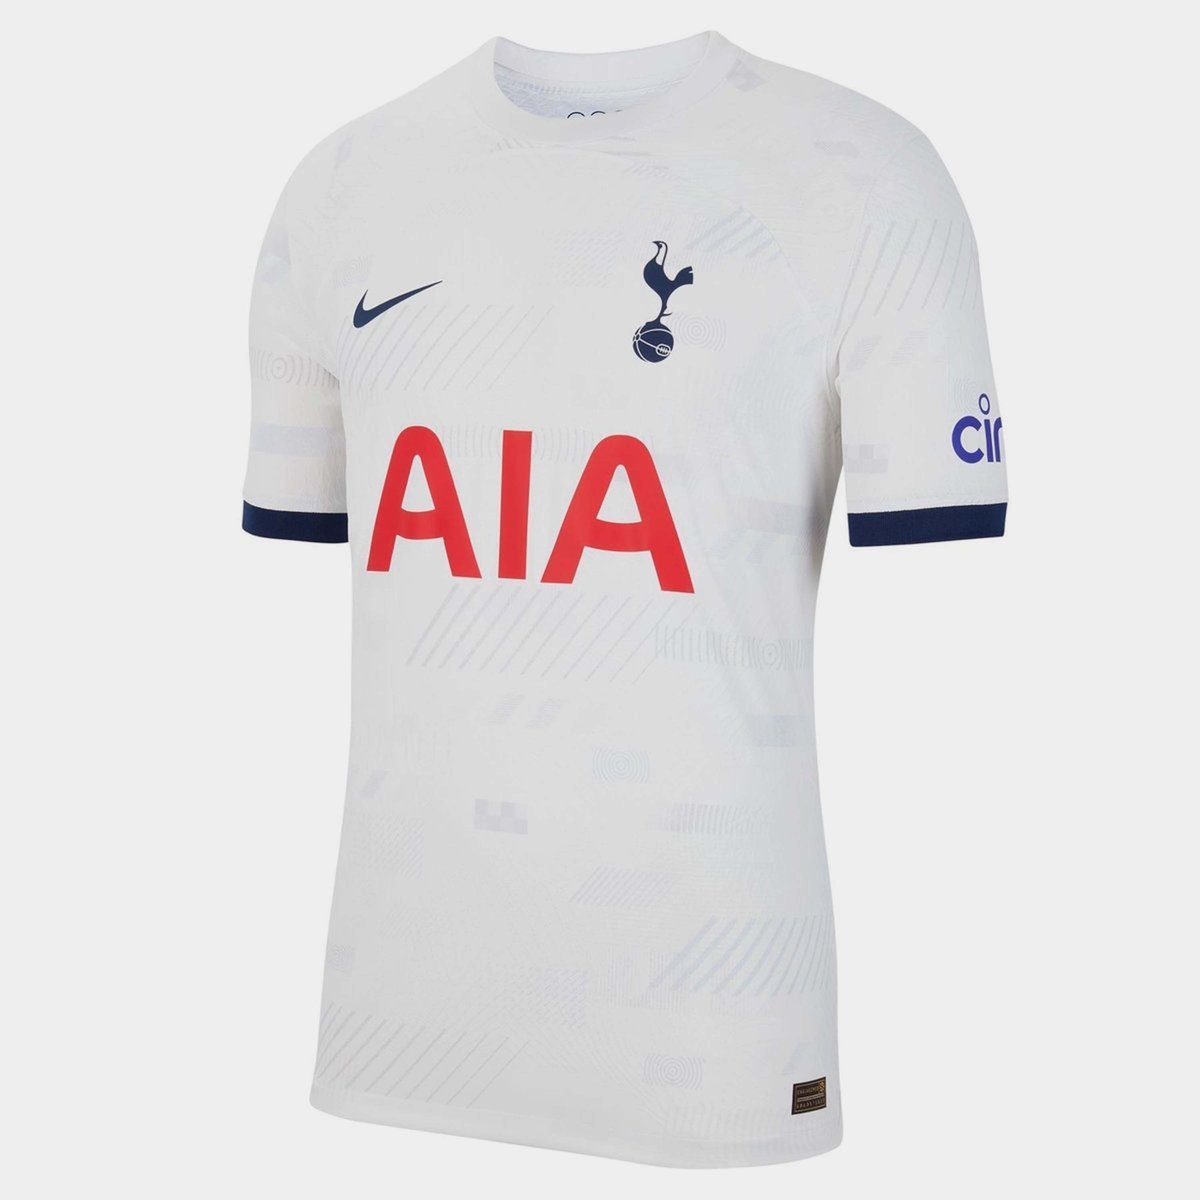 Nike Tottenham Hotspur AWF Jacket 438/Indigo 2022/23 - Chicago Soccer